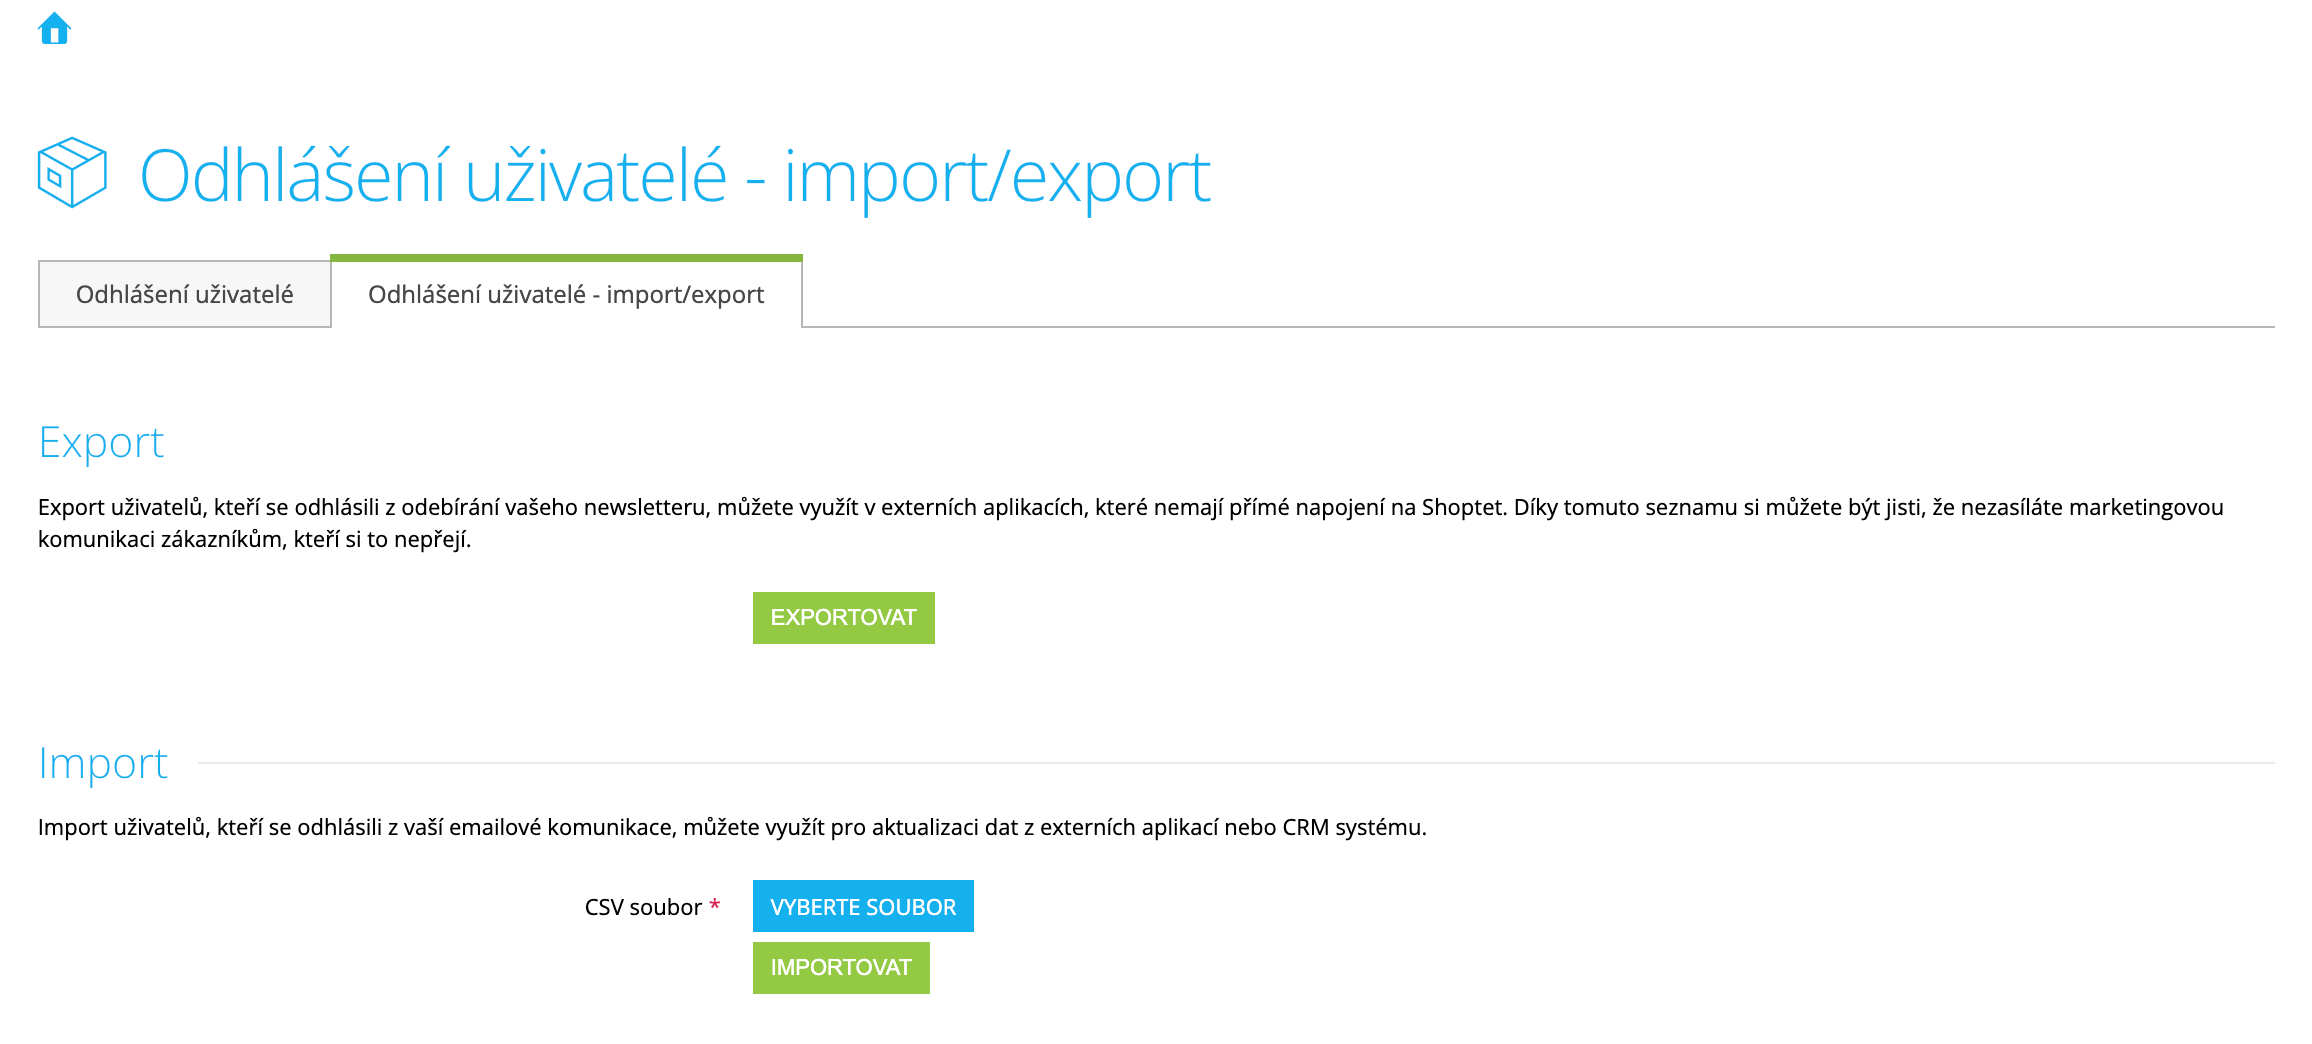 02_-_export-import-odhlaseni-uzivatele.png